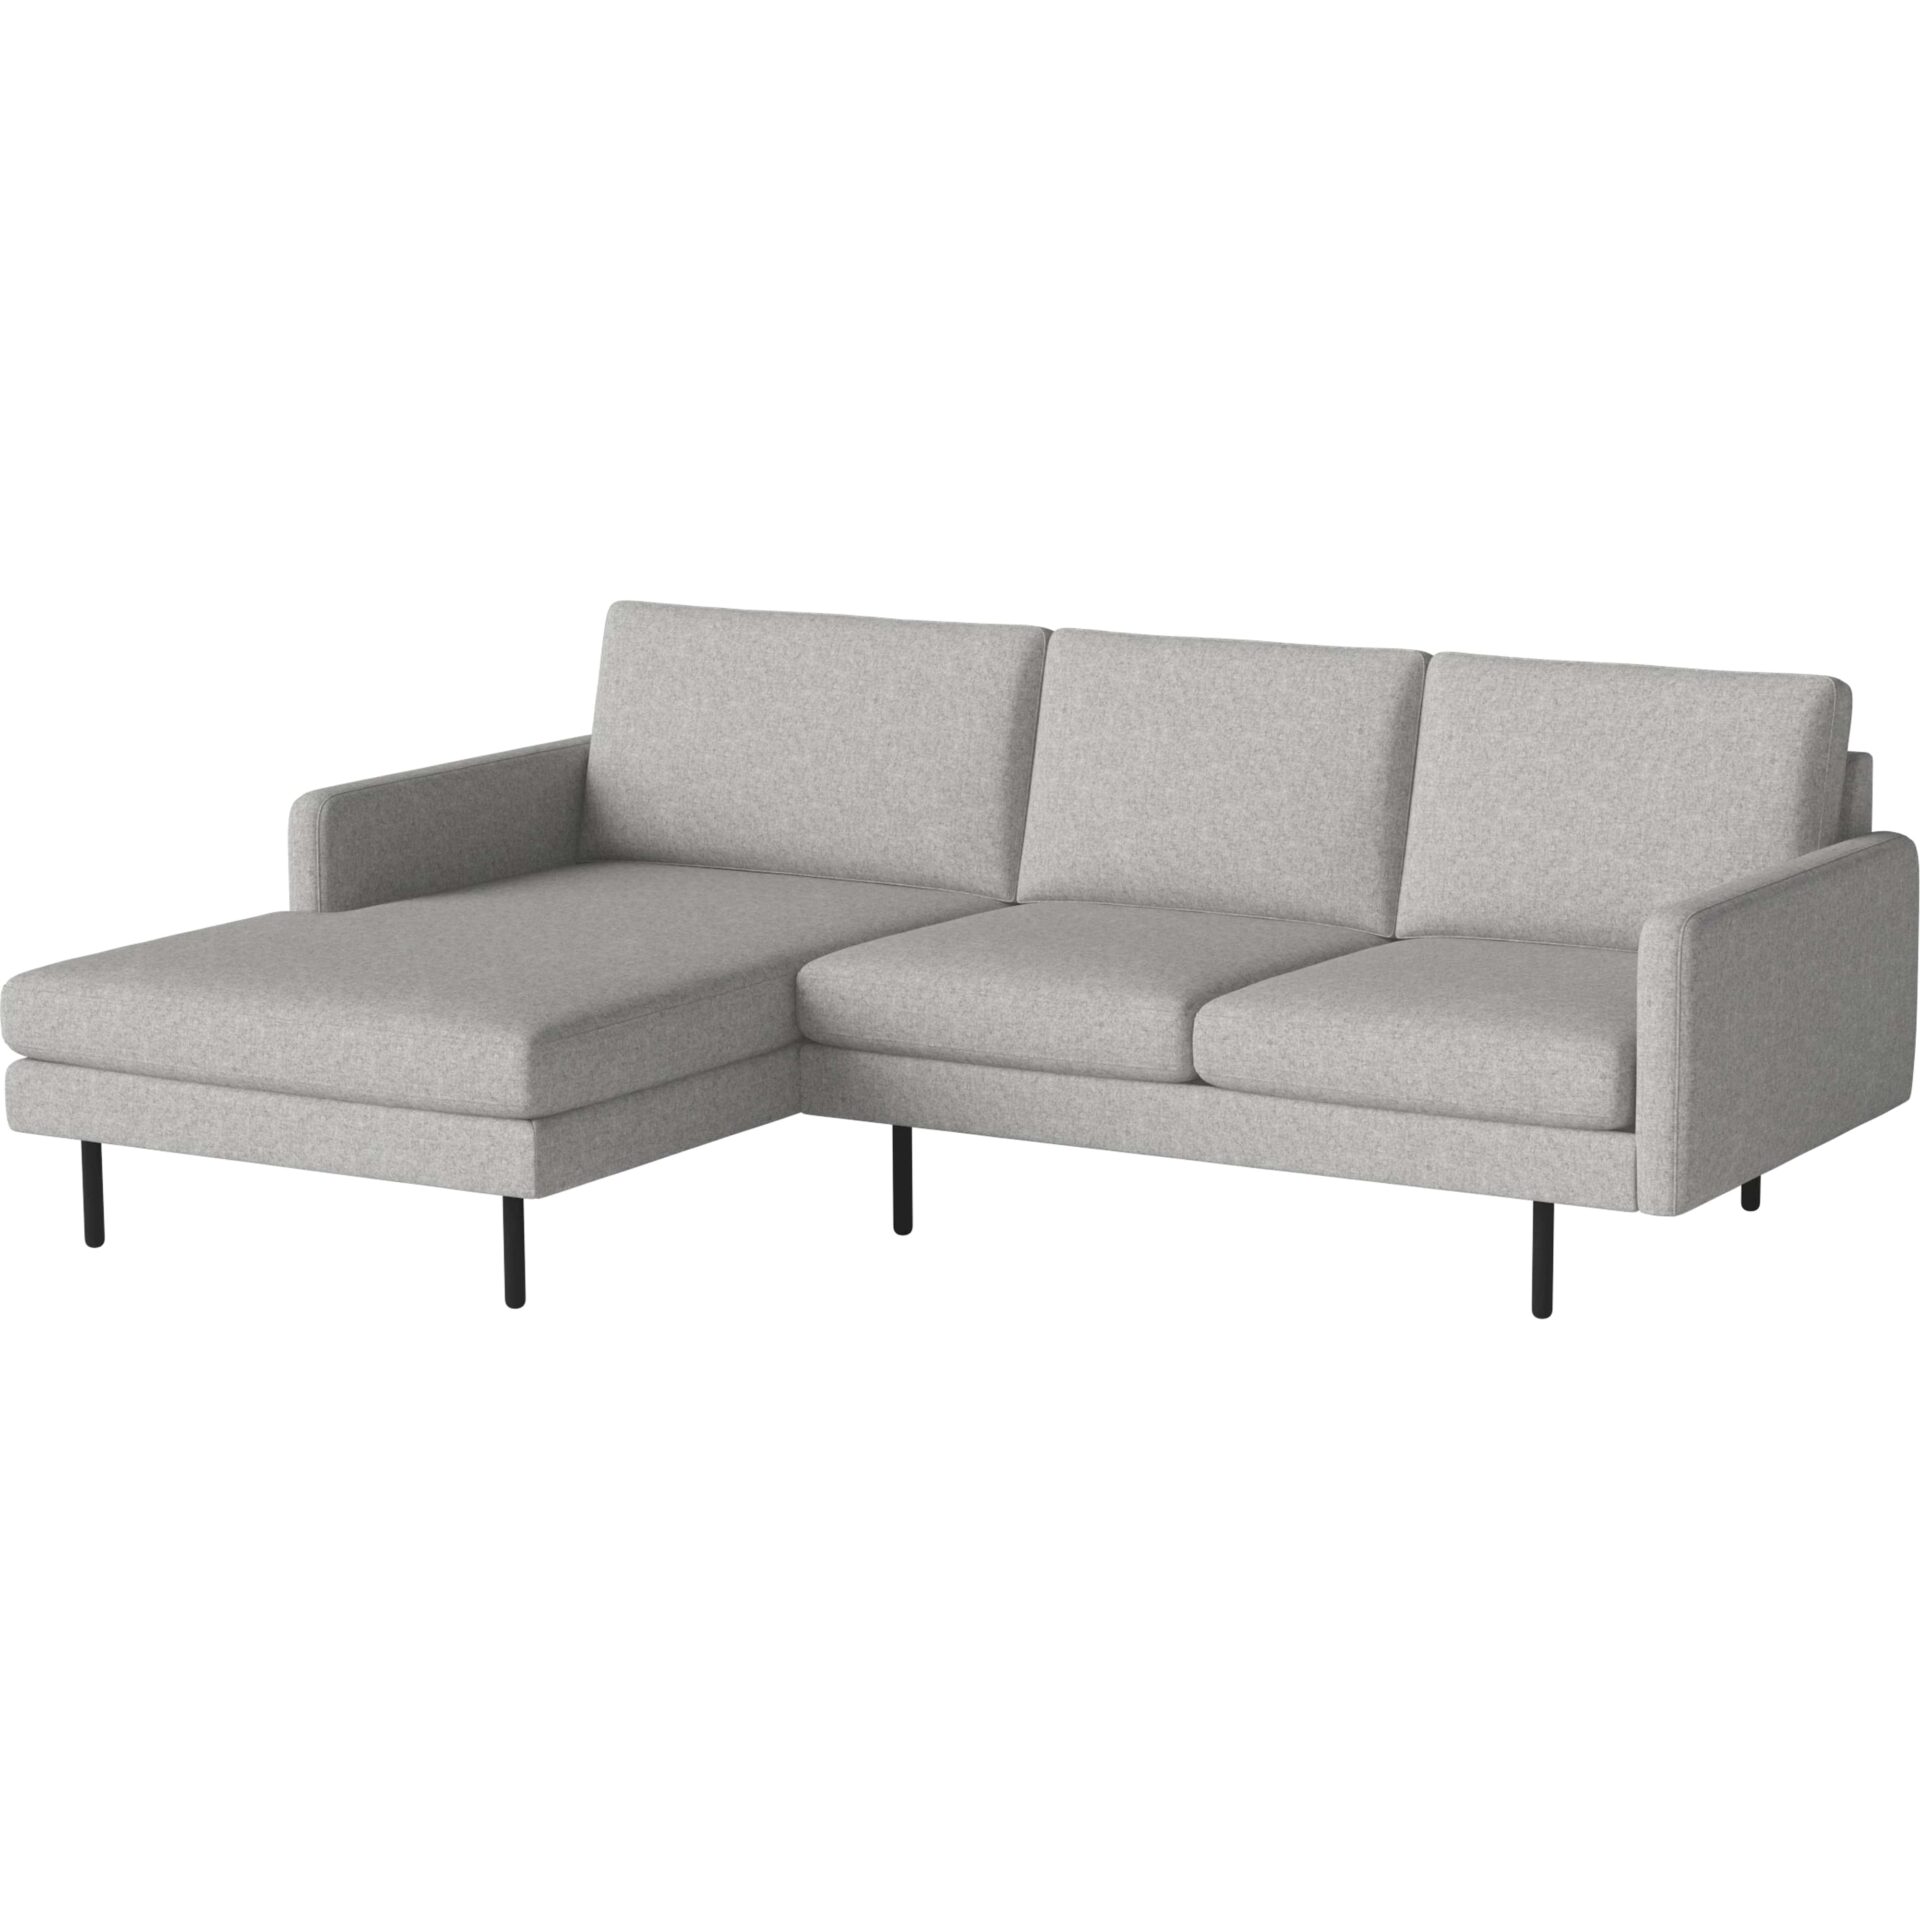 Freudenreich Interior Design | 3-Sitzer Sofa Scandinavia Remix hellgrau melange mit Chaiselongue links